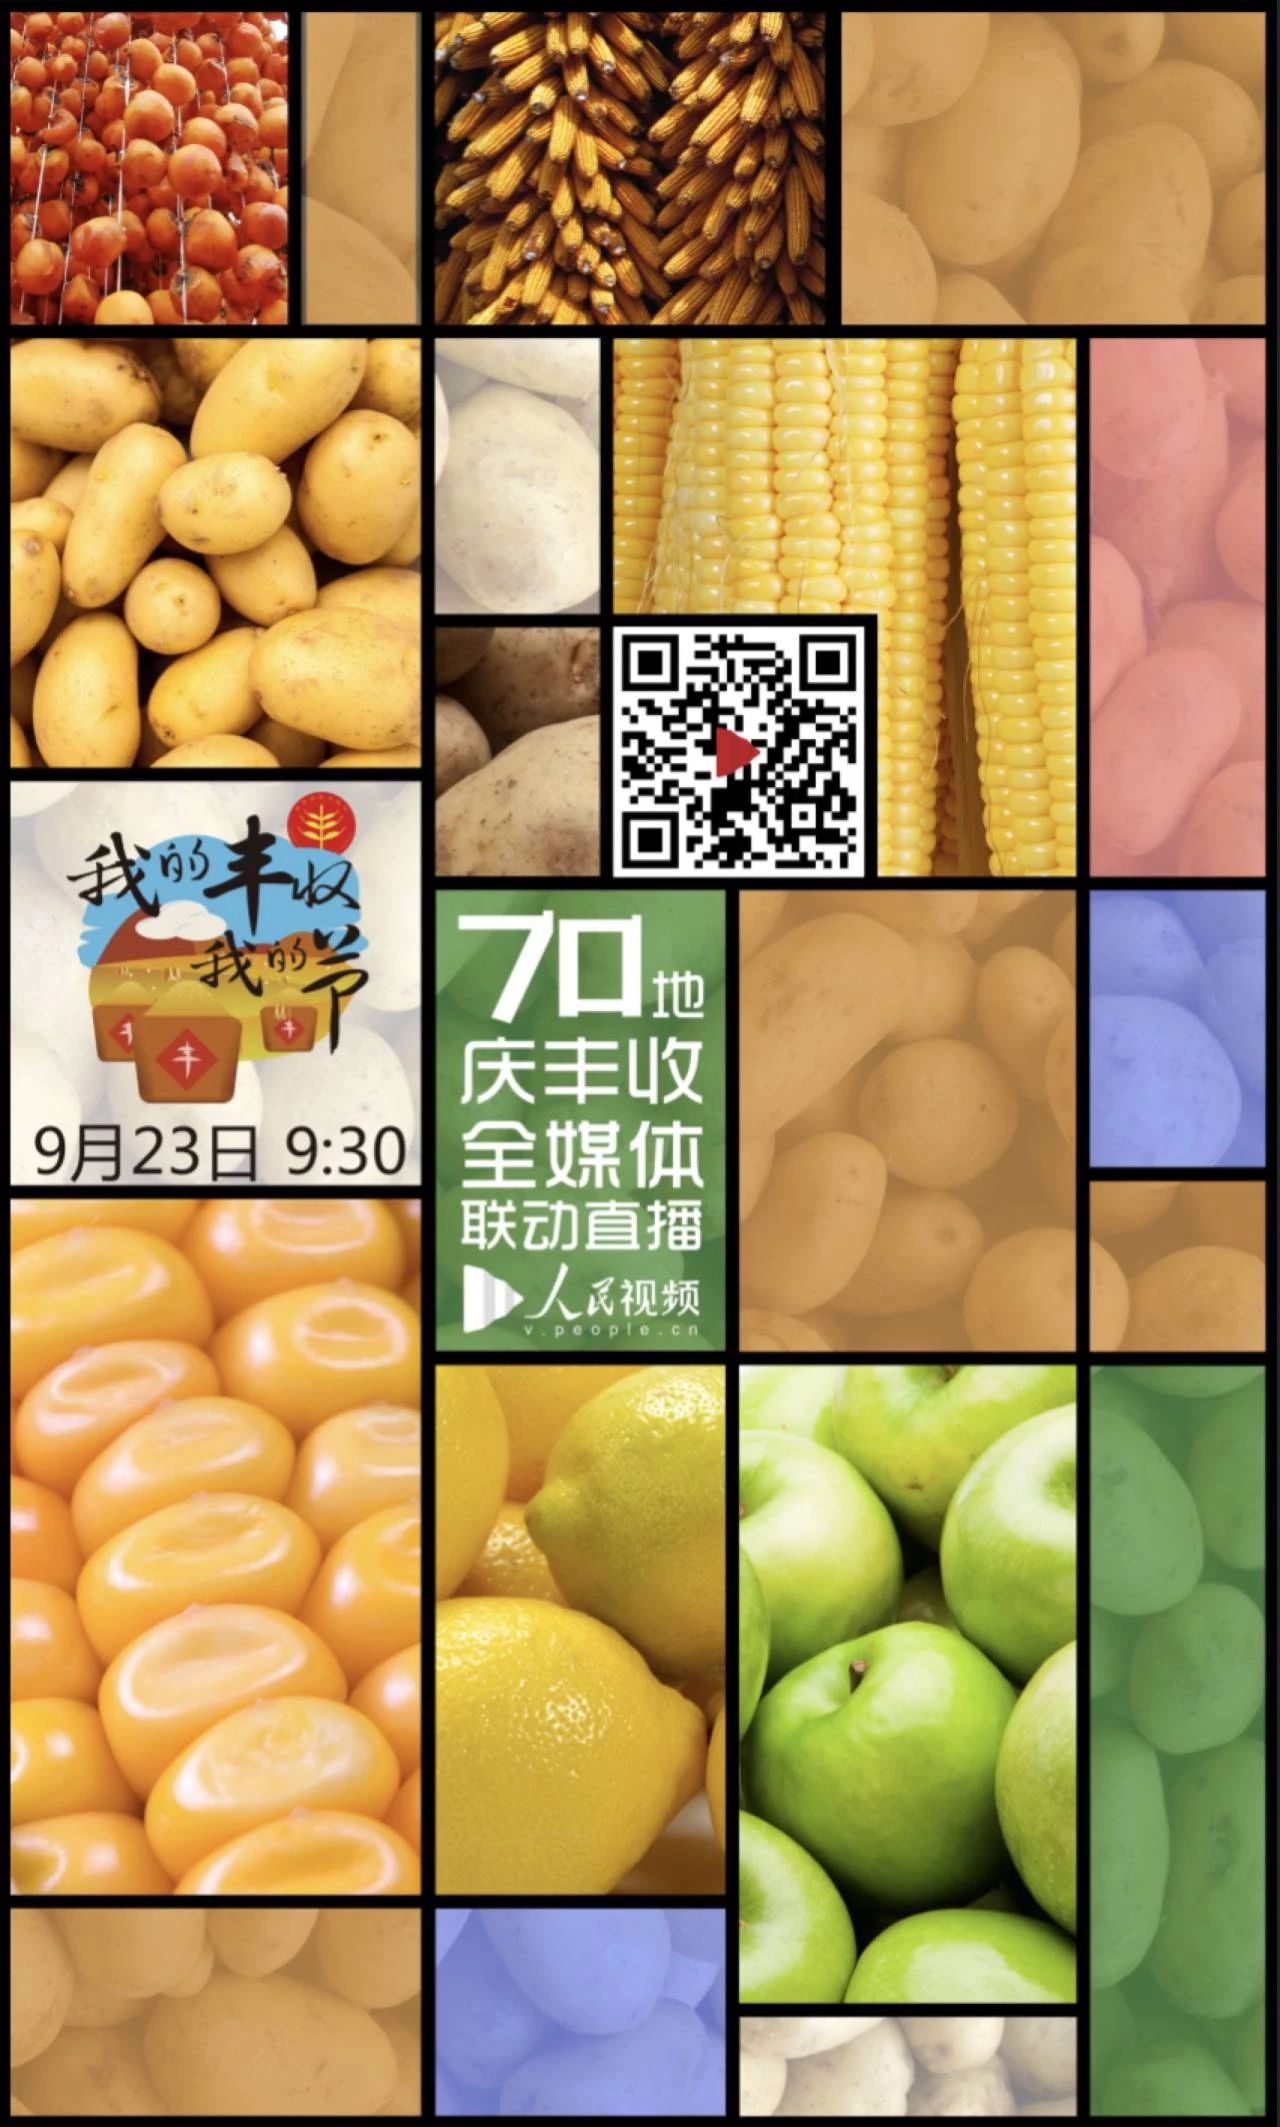 今日9:30 直播中国农民丰收节活动盛况！